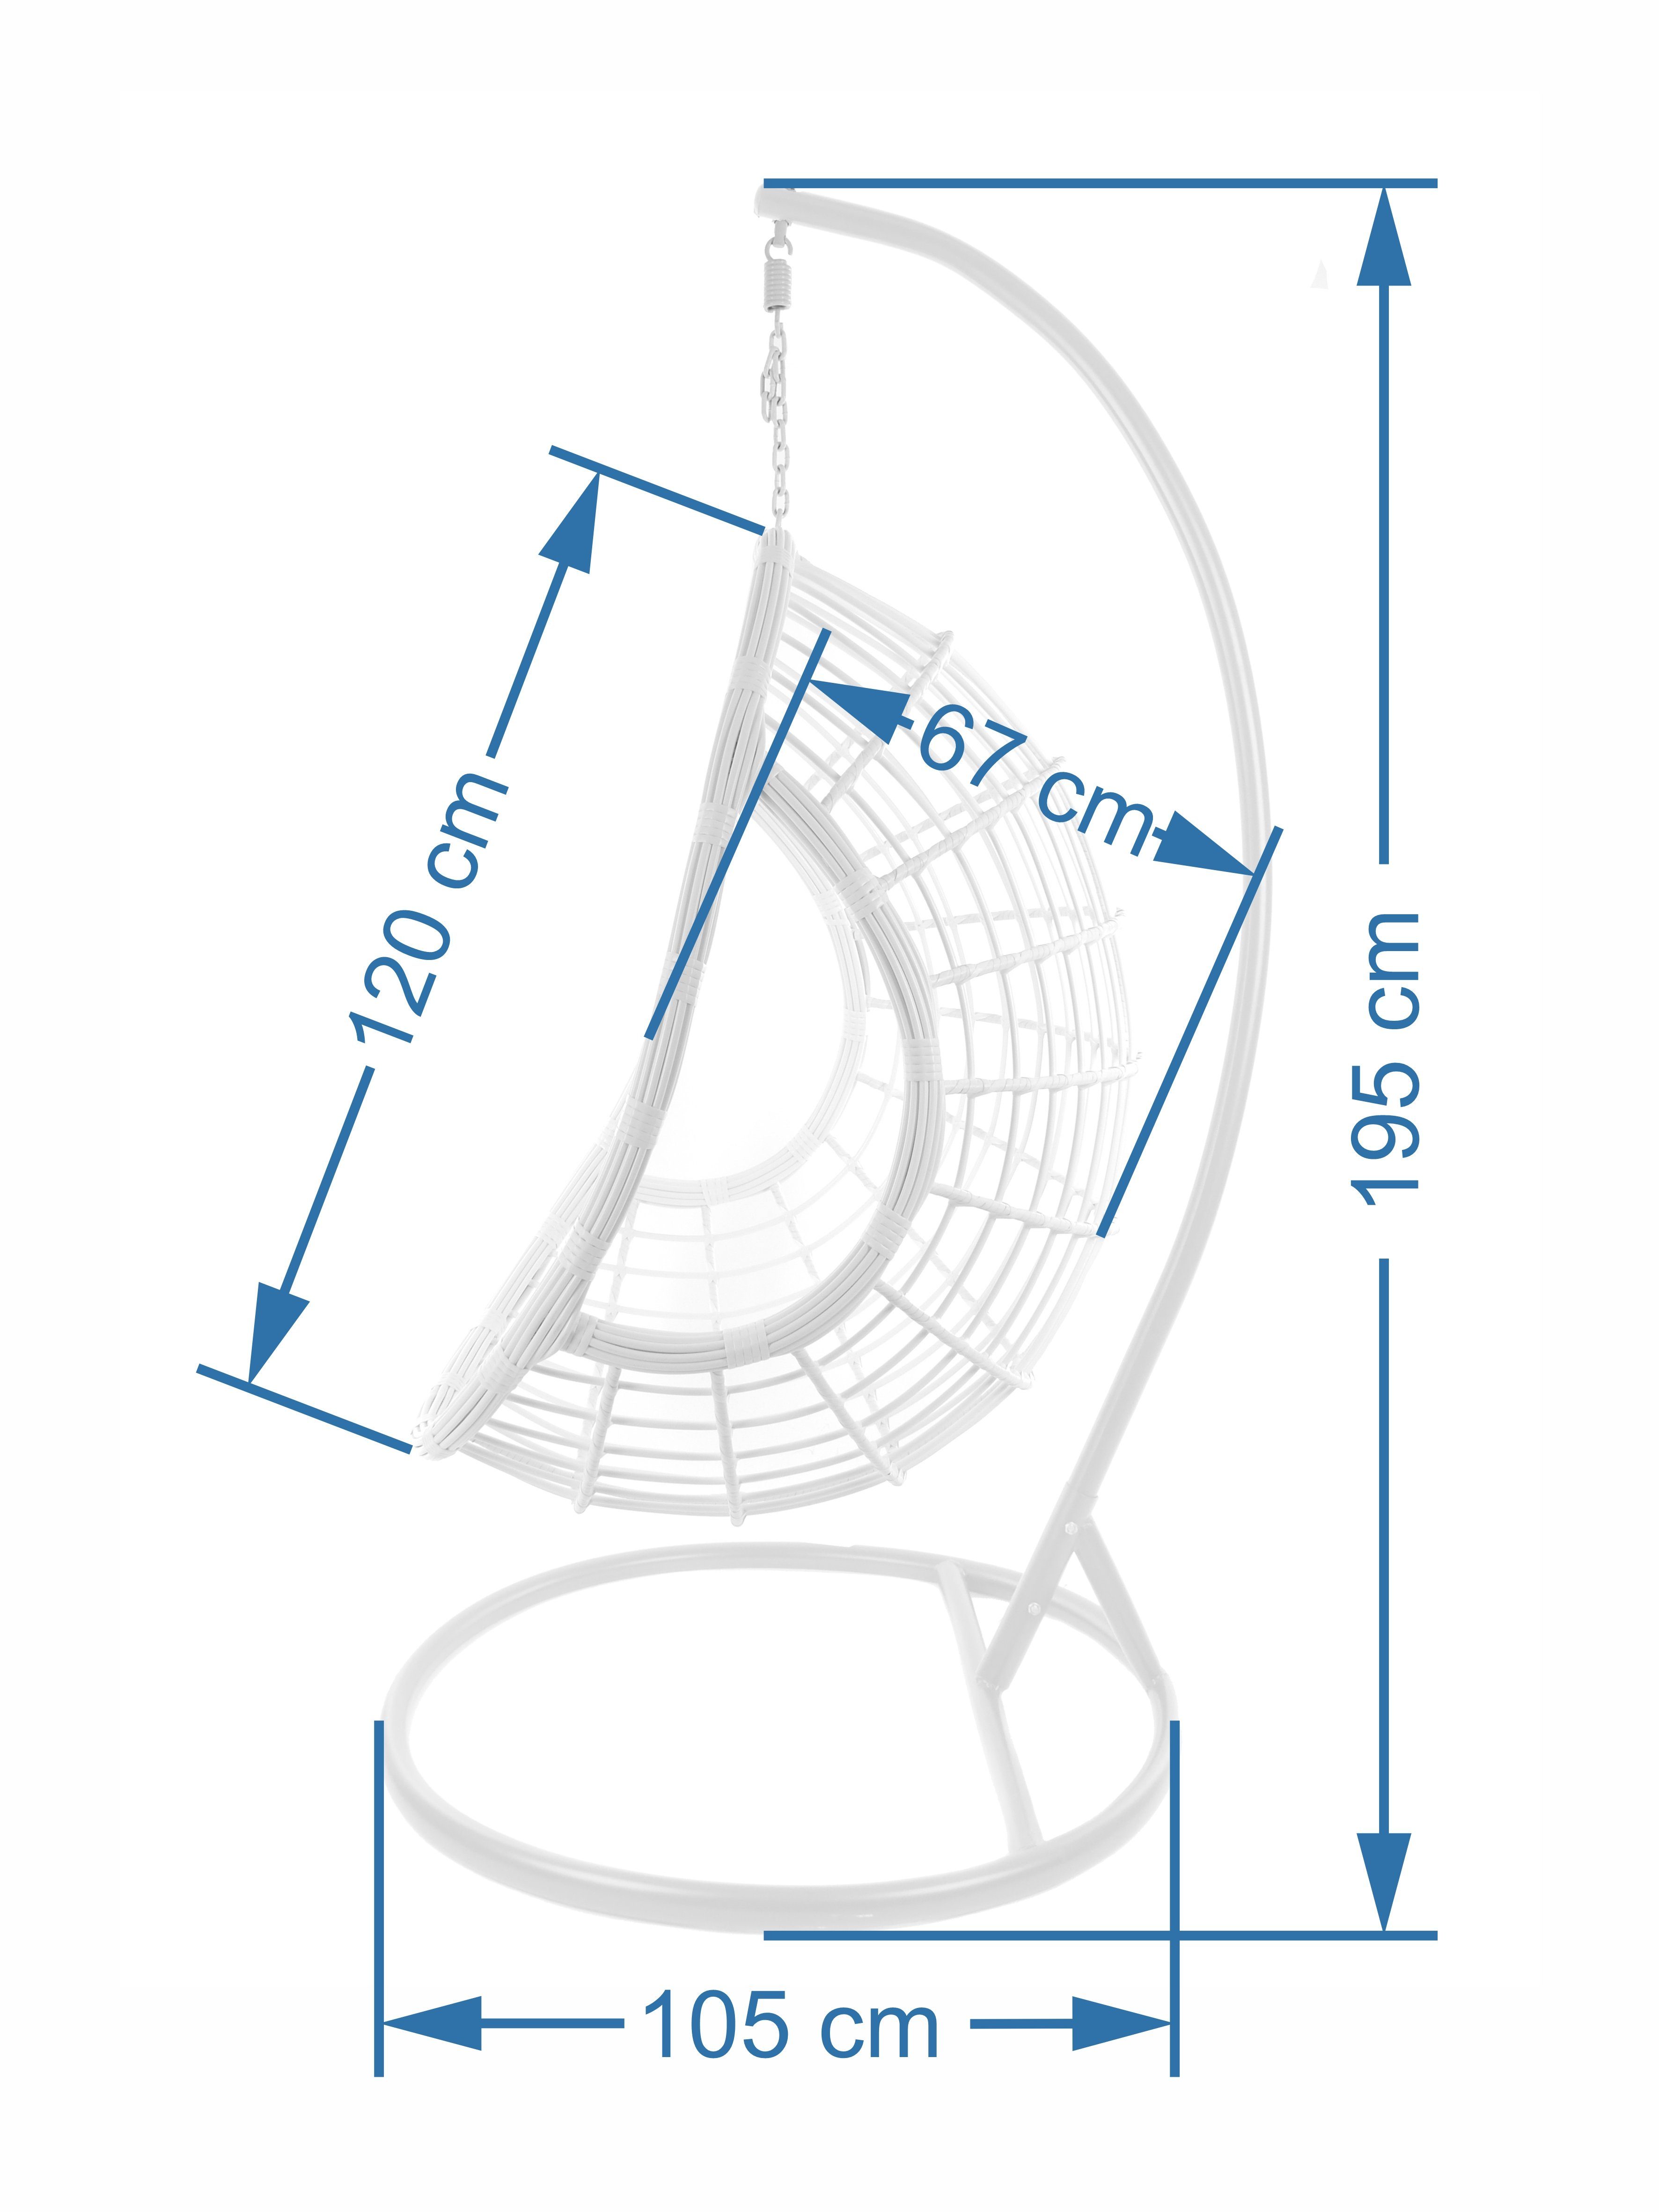 PALMANOVA Hängesessel sommer Loungemöbel, Gestell moderne grau, blumenmuster und KIDEO inklusive Kissen (3761 Hängesessel grau, Hängestuhl summergarden) in